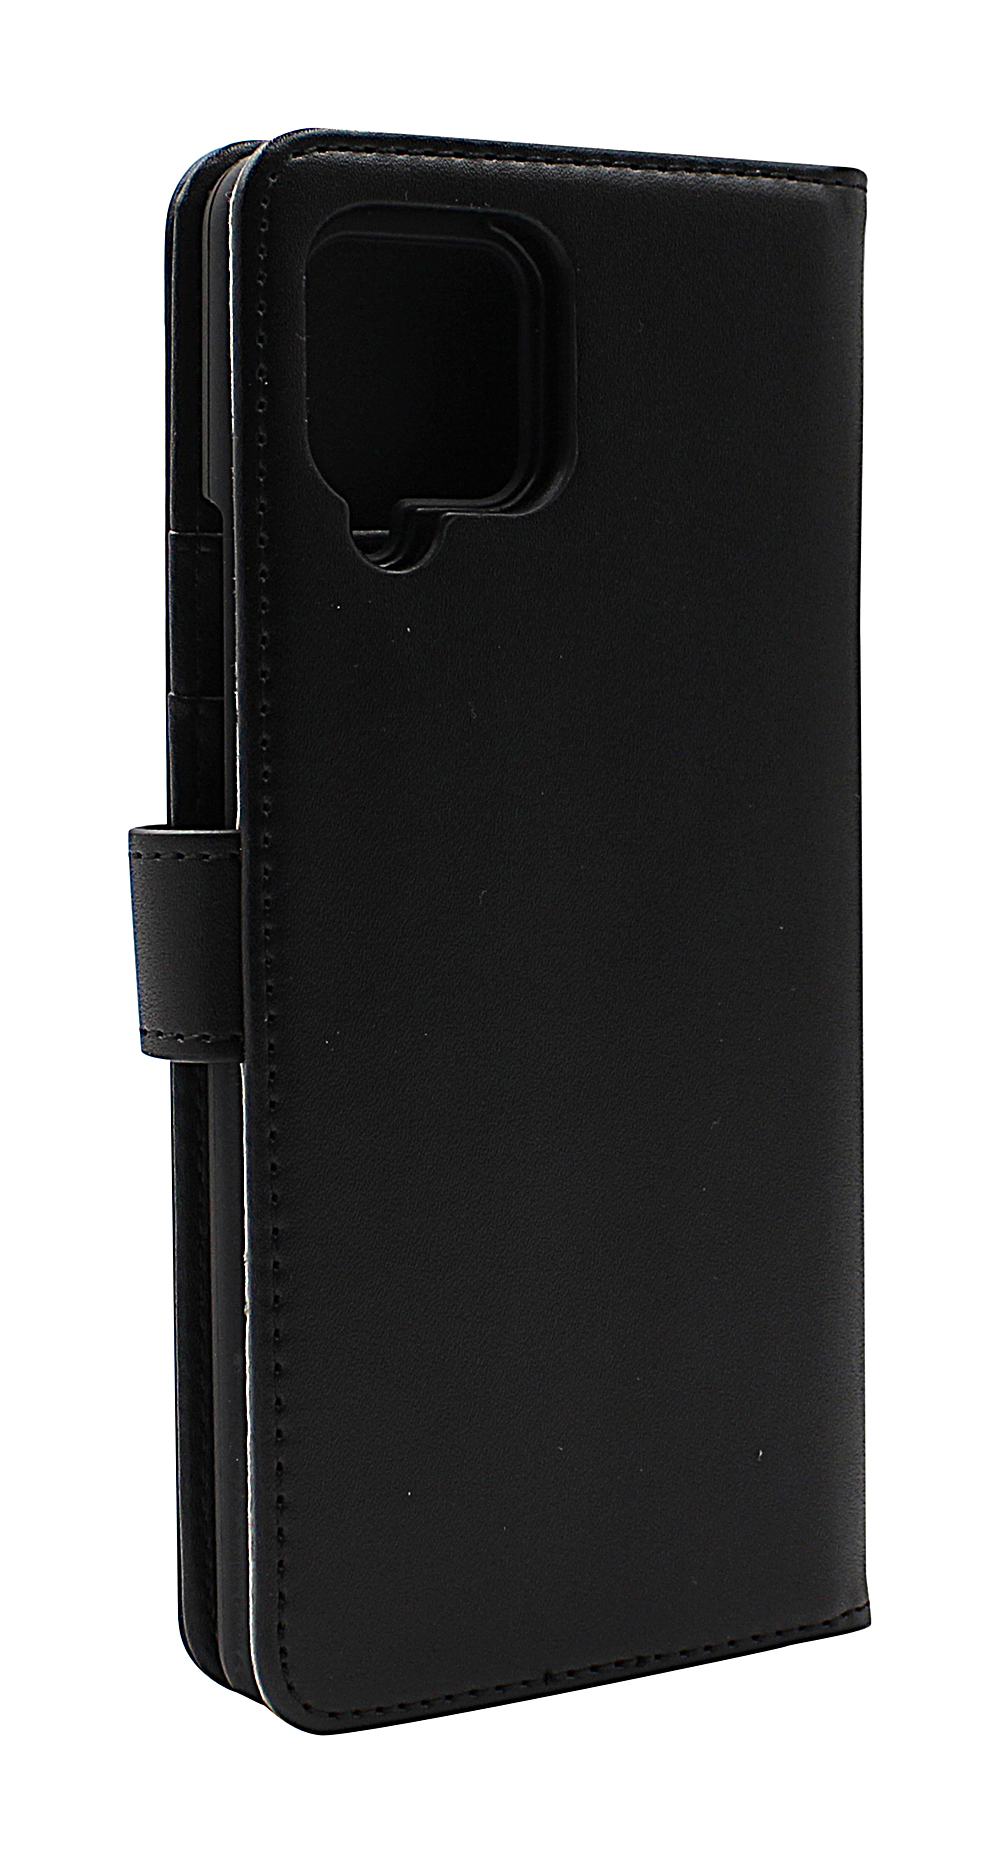 Skimblocker Magnet Wallet Samsung Galaxy A42 5G